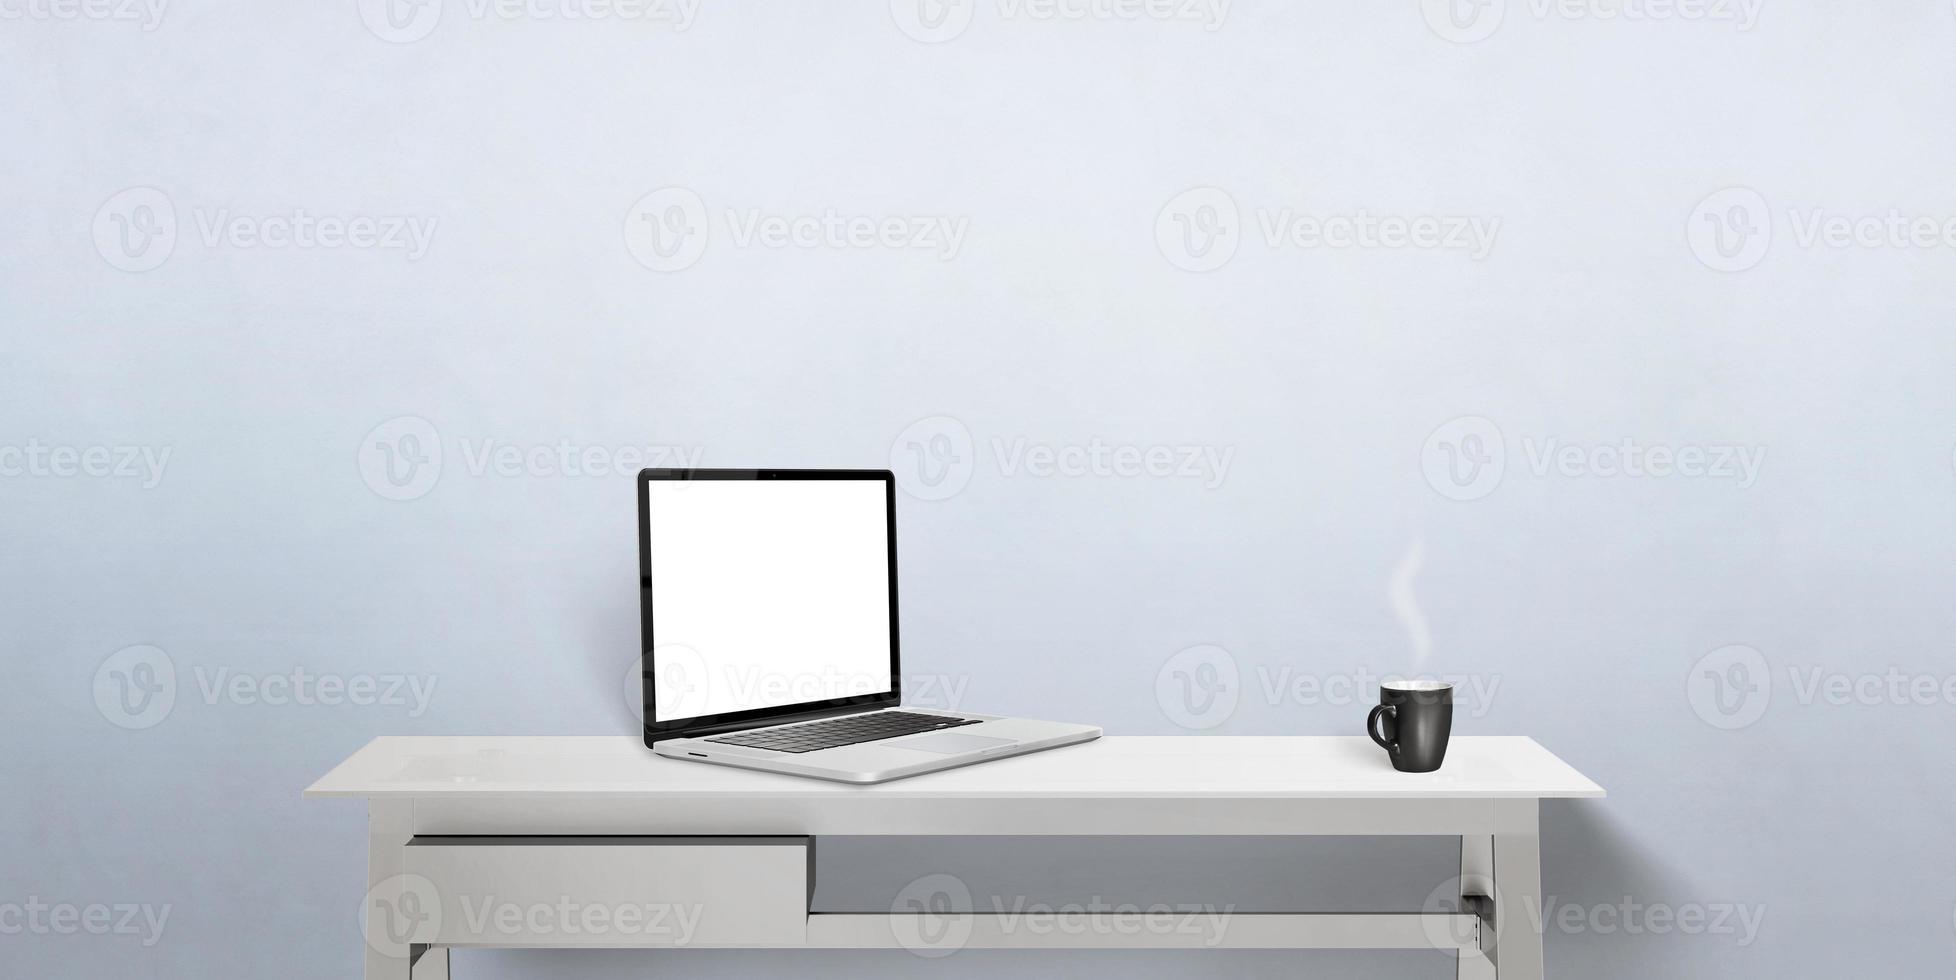 Laptop-Computermodell auf dem Schreibtisch. Vorderansicht. notizbuch mit isolierter anzeige für die werbung von webseiten. Kaffeetasse daneben foto